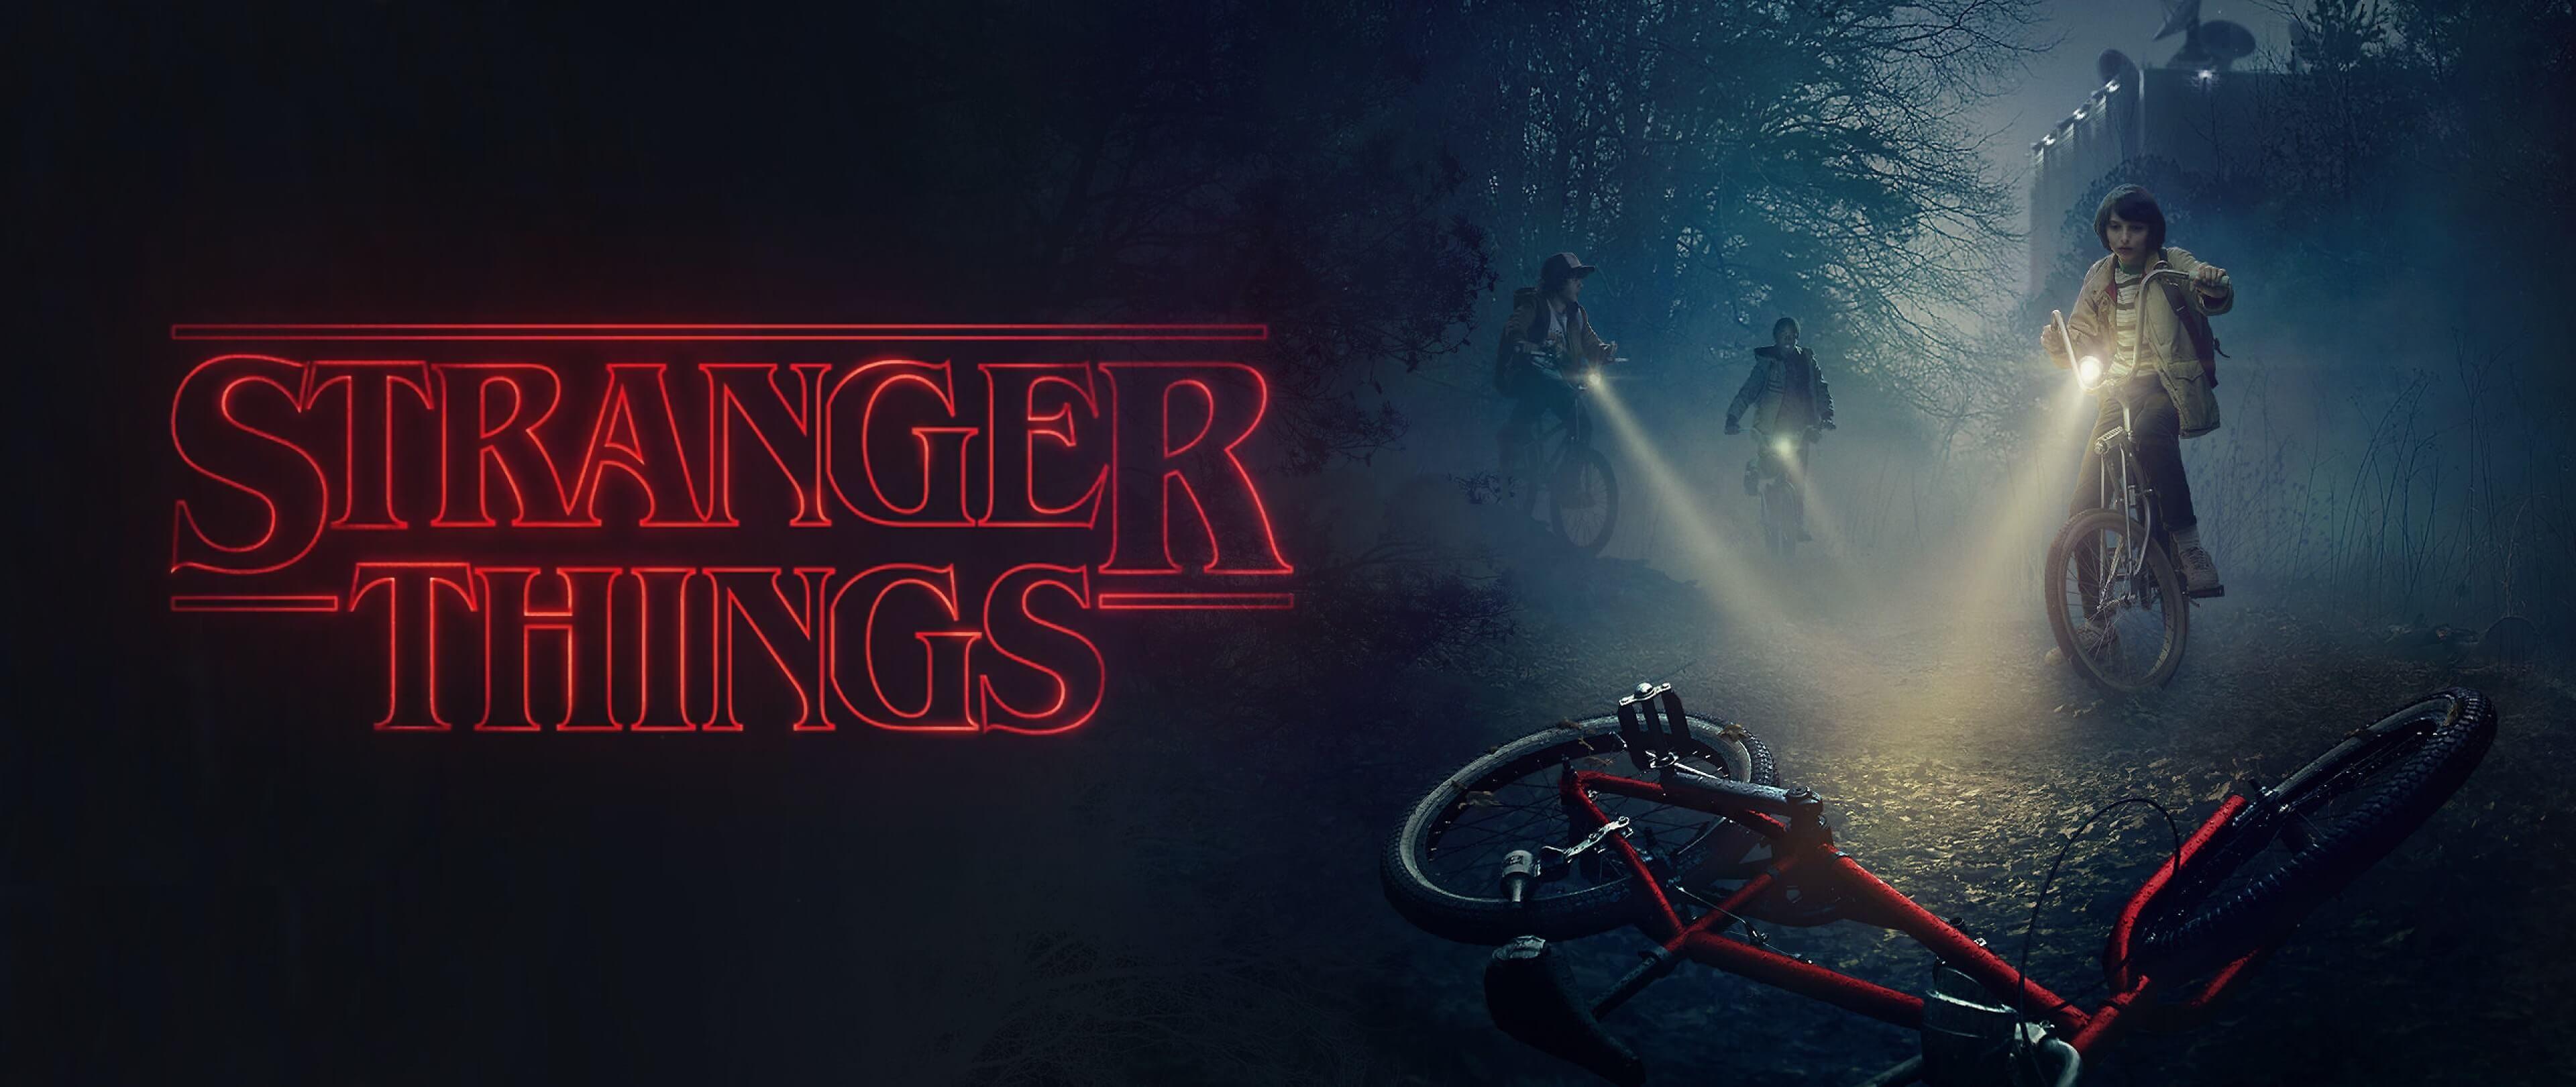 Stranger Things Season 4 Poster Wallpaper 4K 2461h